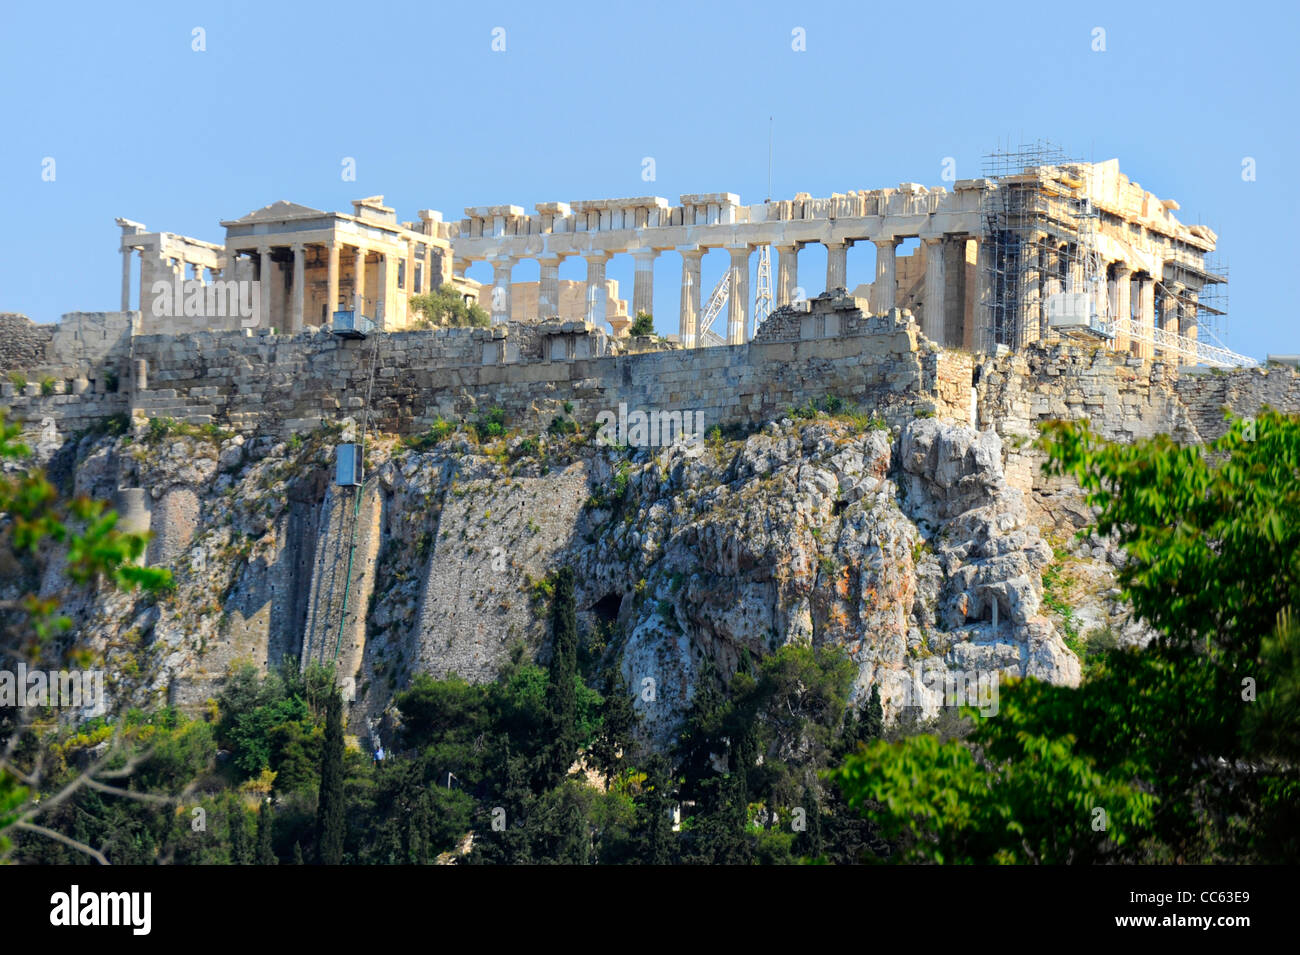 Le Parthénon Acropole Athènes Grèce Kallikrates Iktinos Athena Banque D'Images